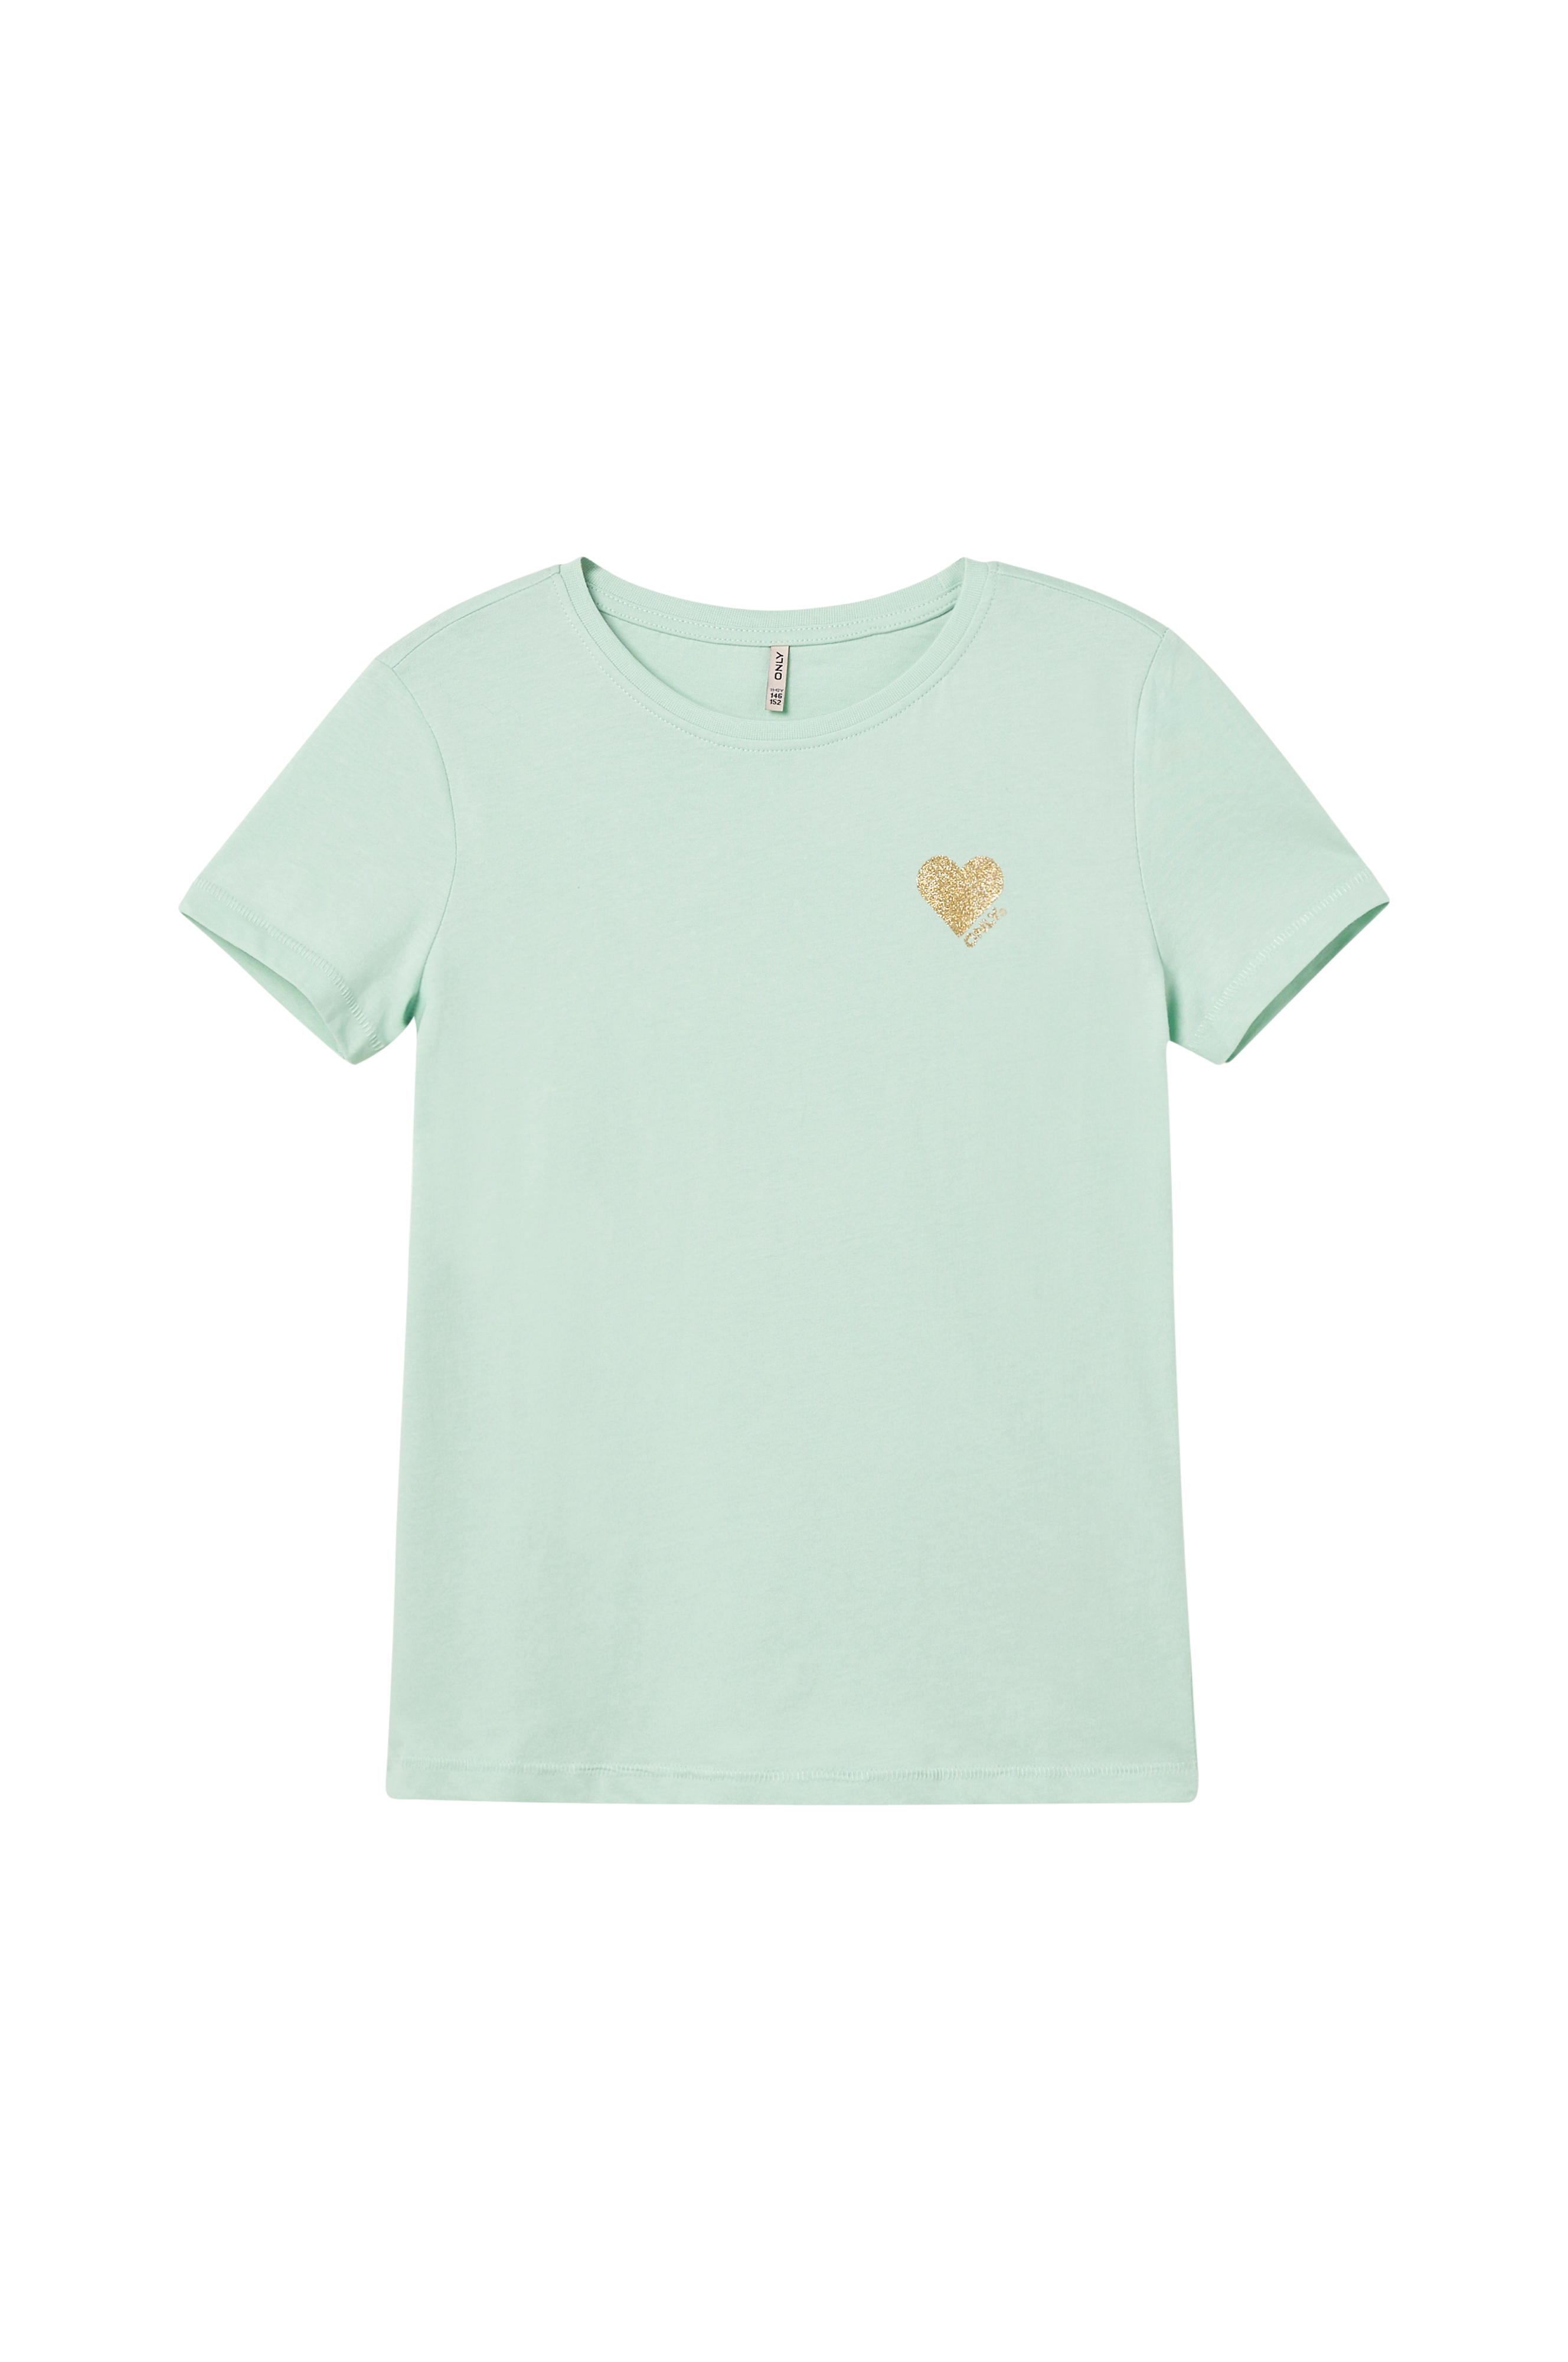 S/S Grønn - Top T-skjorte kogKita - Logo ONLY KIDS T-shirts Jrs